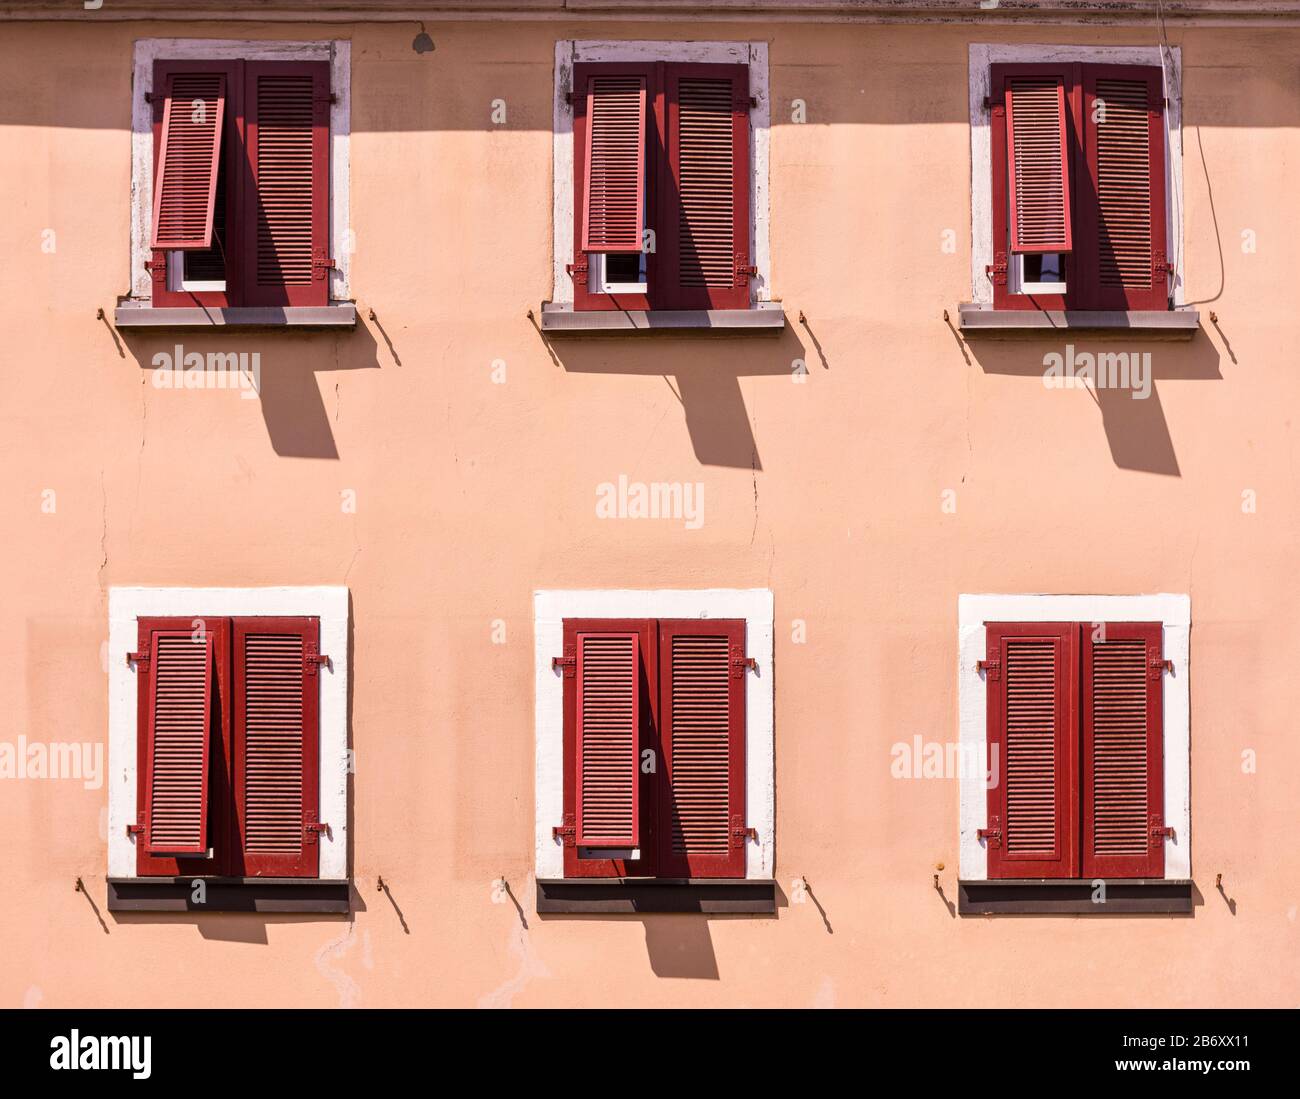 Façade d'une maison de style méditerranéen, plâtre peint en couleur sable avec volets en bois fermés en rouge foncé, partiellement exposé sur 6 fenêtres Banque D'Images